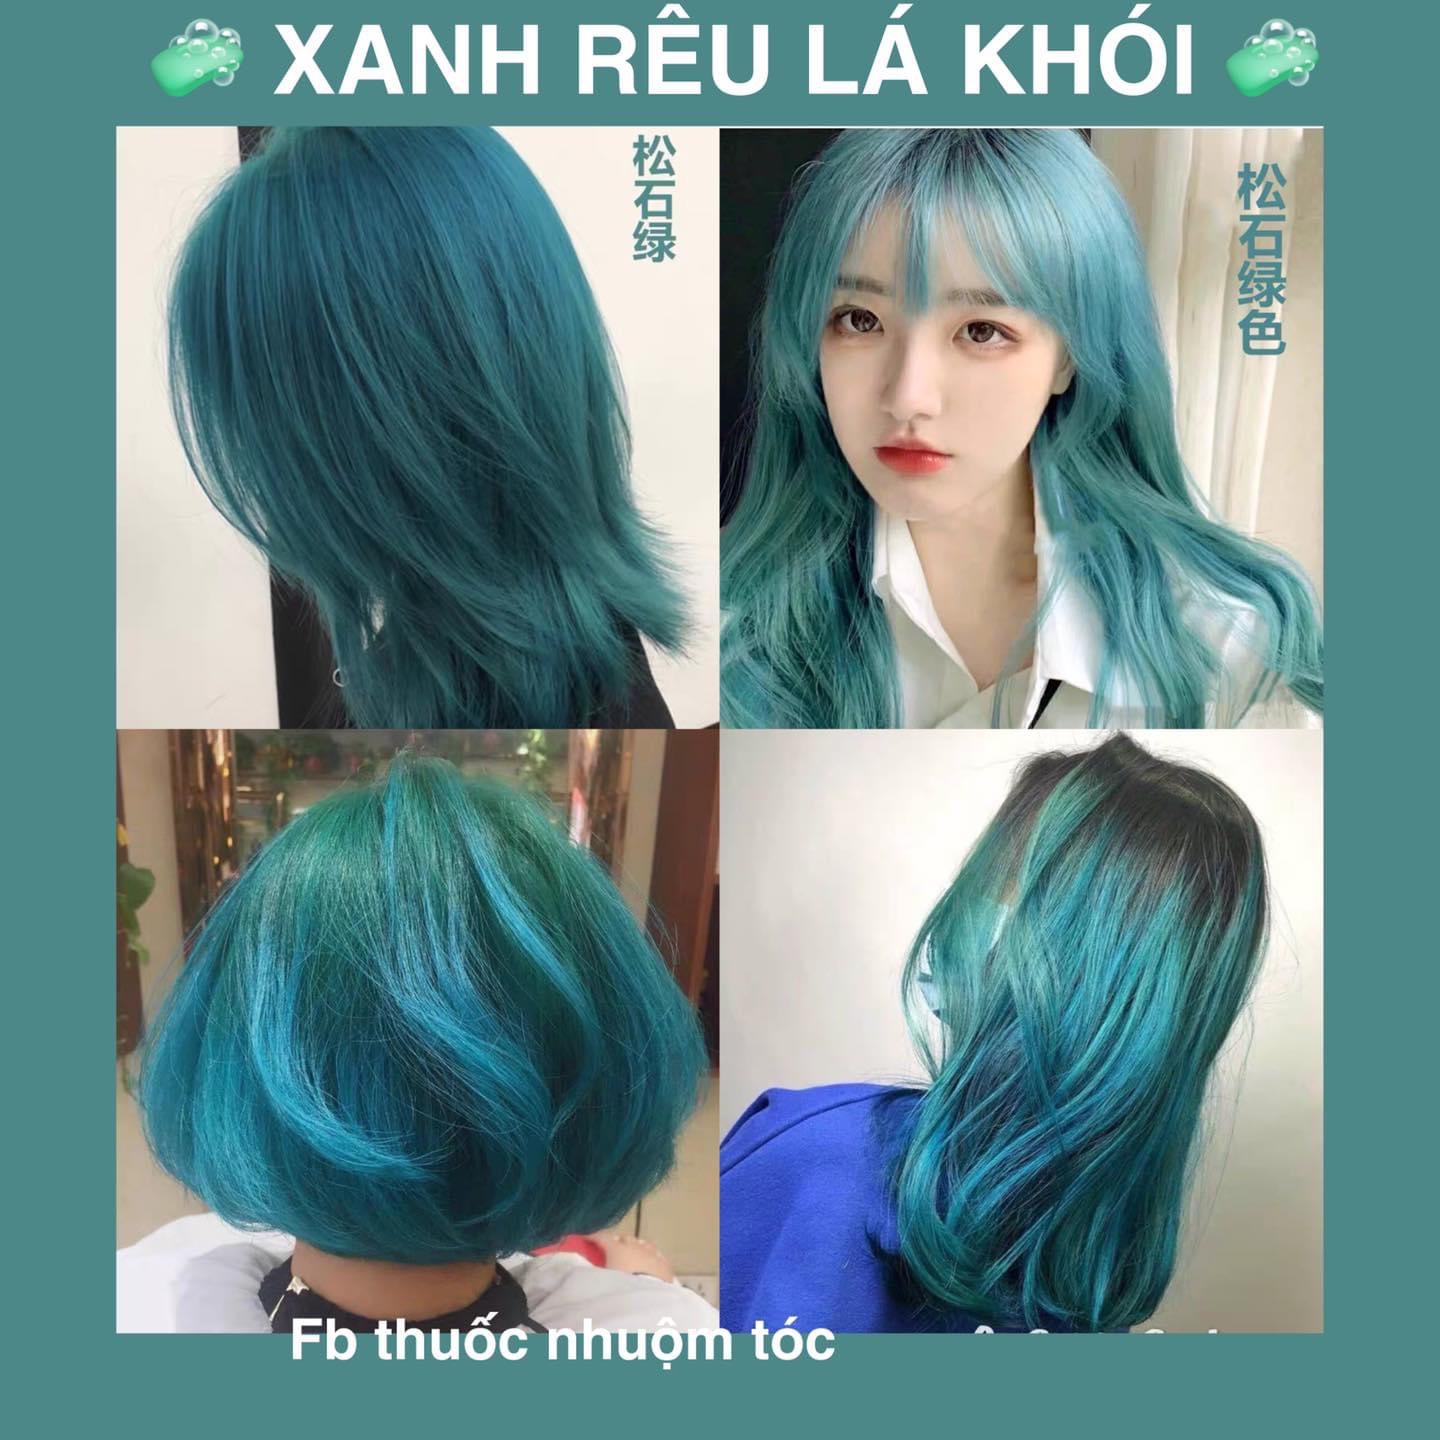 Thuốc nhuộm tóc màu XANH LÁ - Cần tẩy Tóc level 9-10 | Shopee Việt Nam